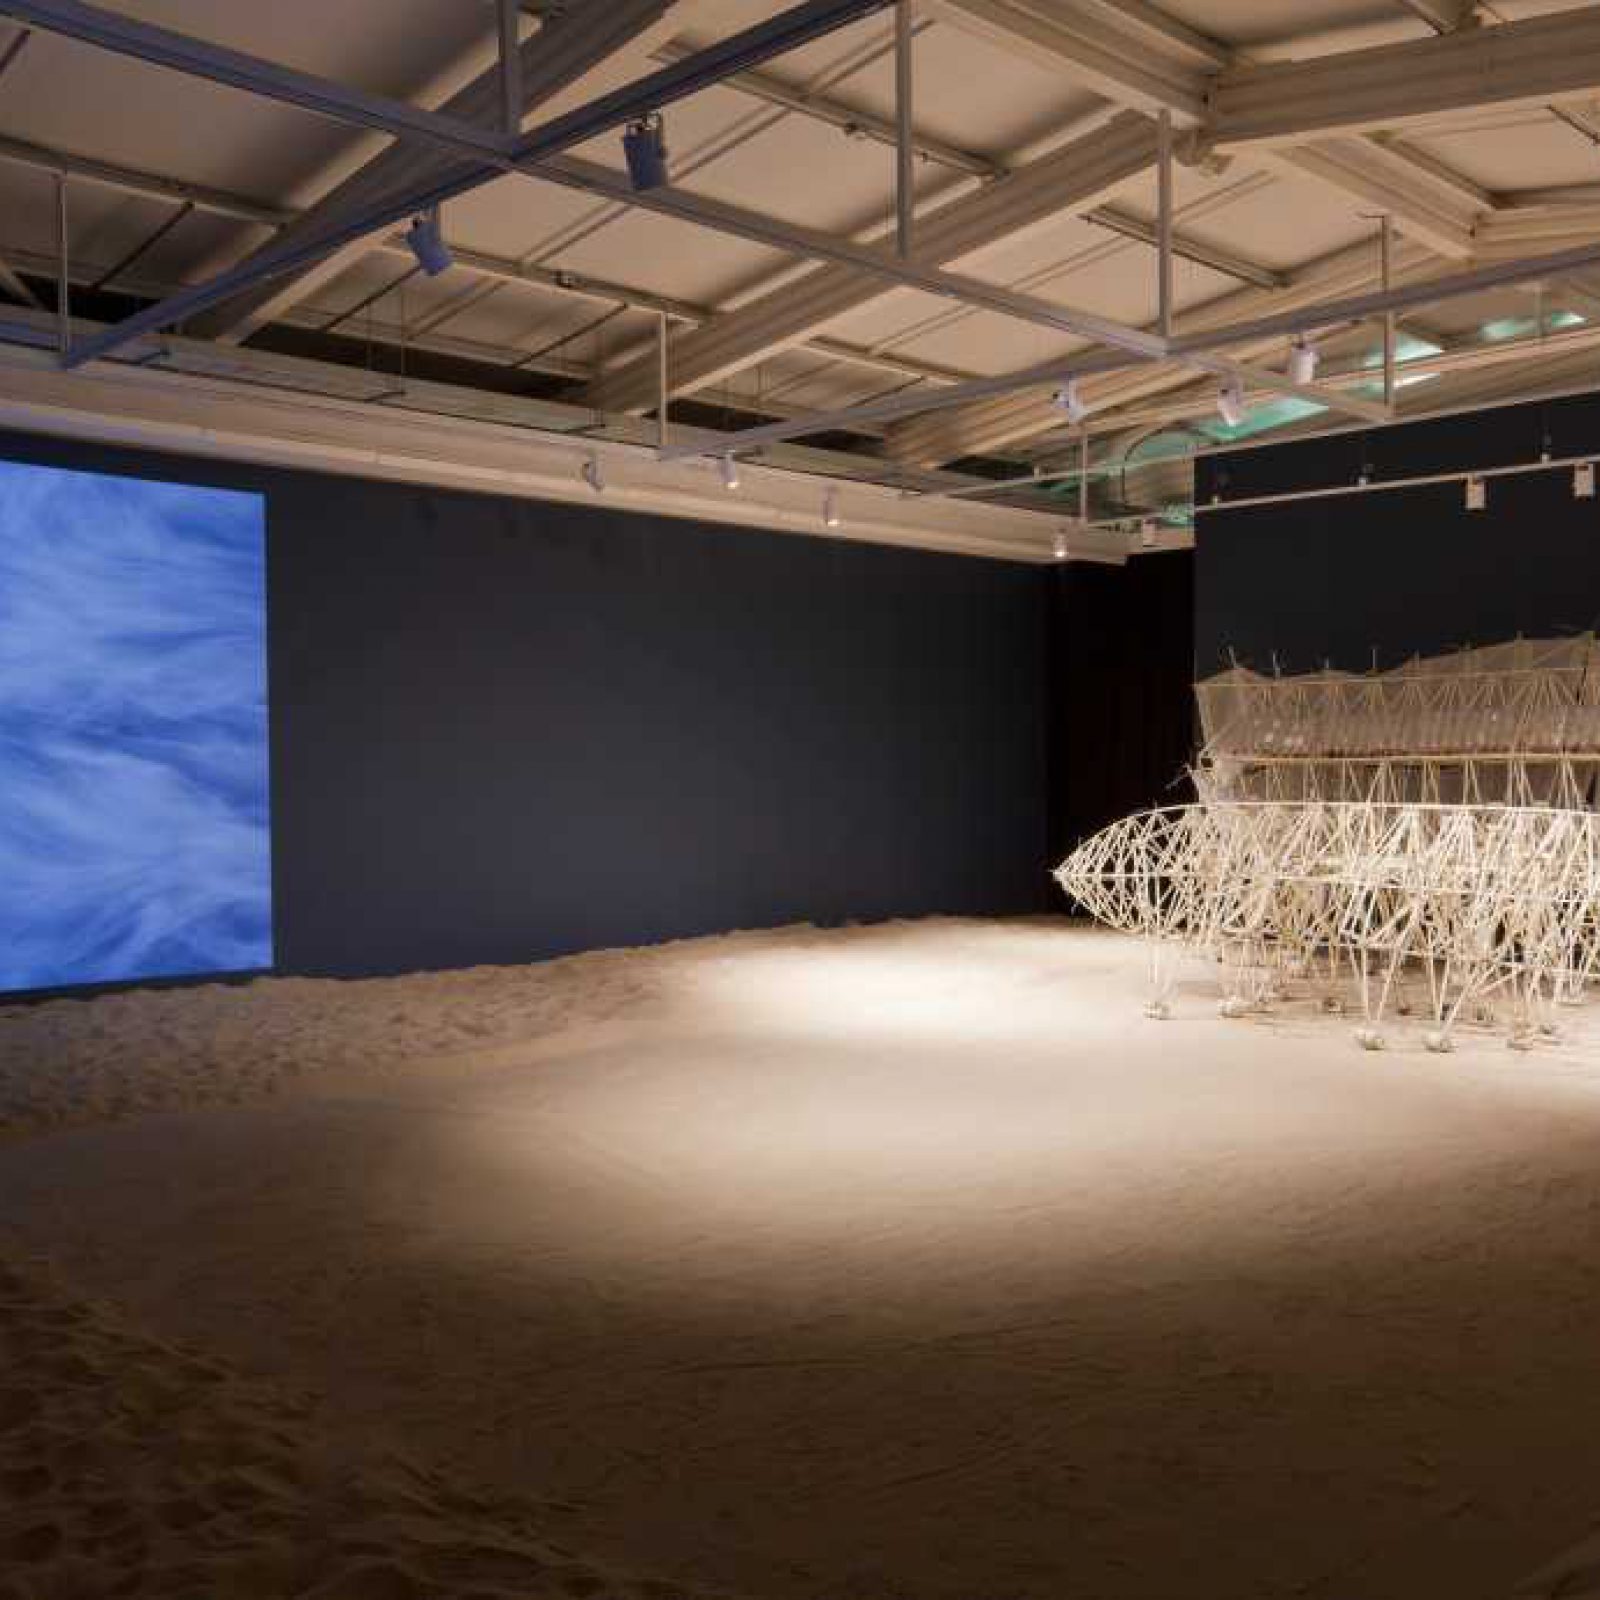 Vista de la exposición "Algoritmos del viento", de Theo Jansen, en el centro Nacional de Arte Contemporáneo Cerrillos, Santiago de Chile, 2018. Foto: Sebastián Mejía